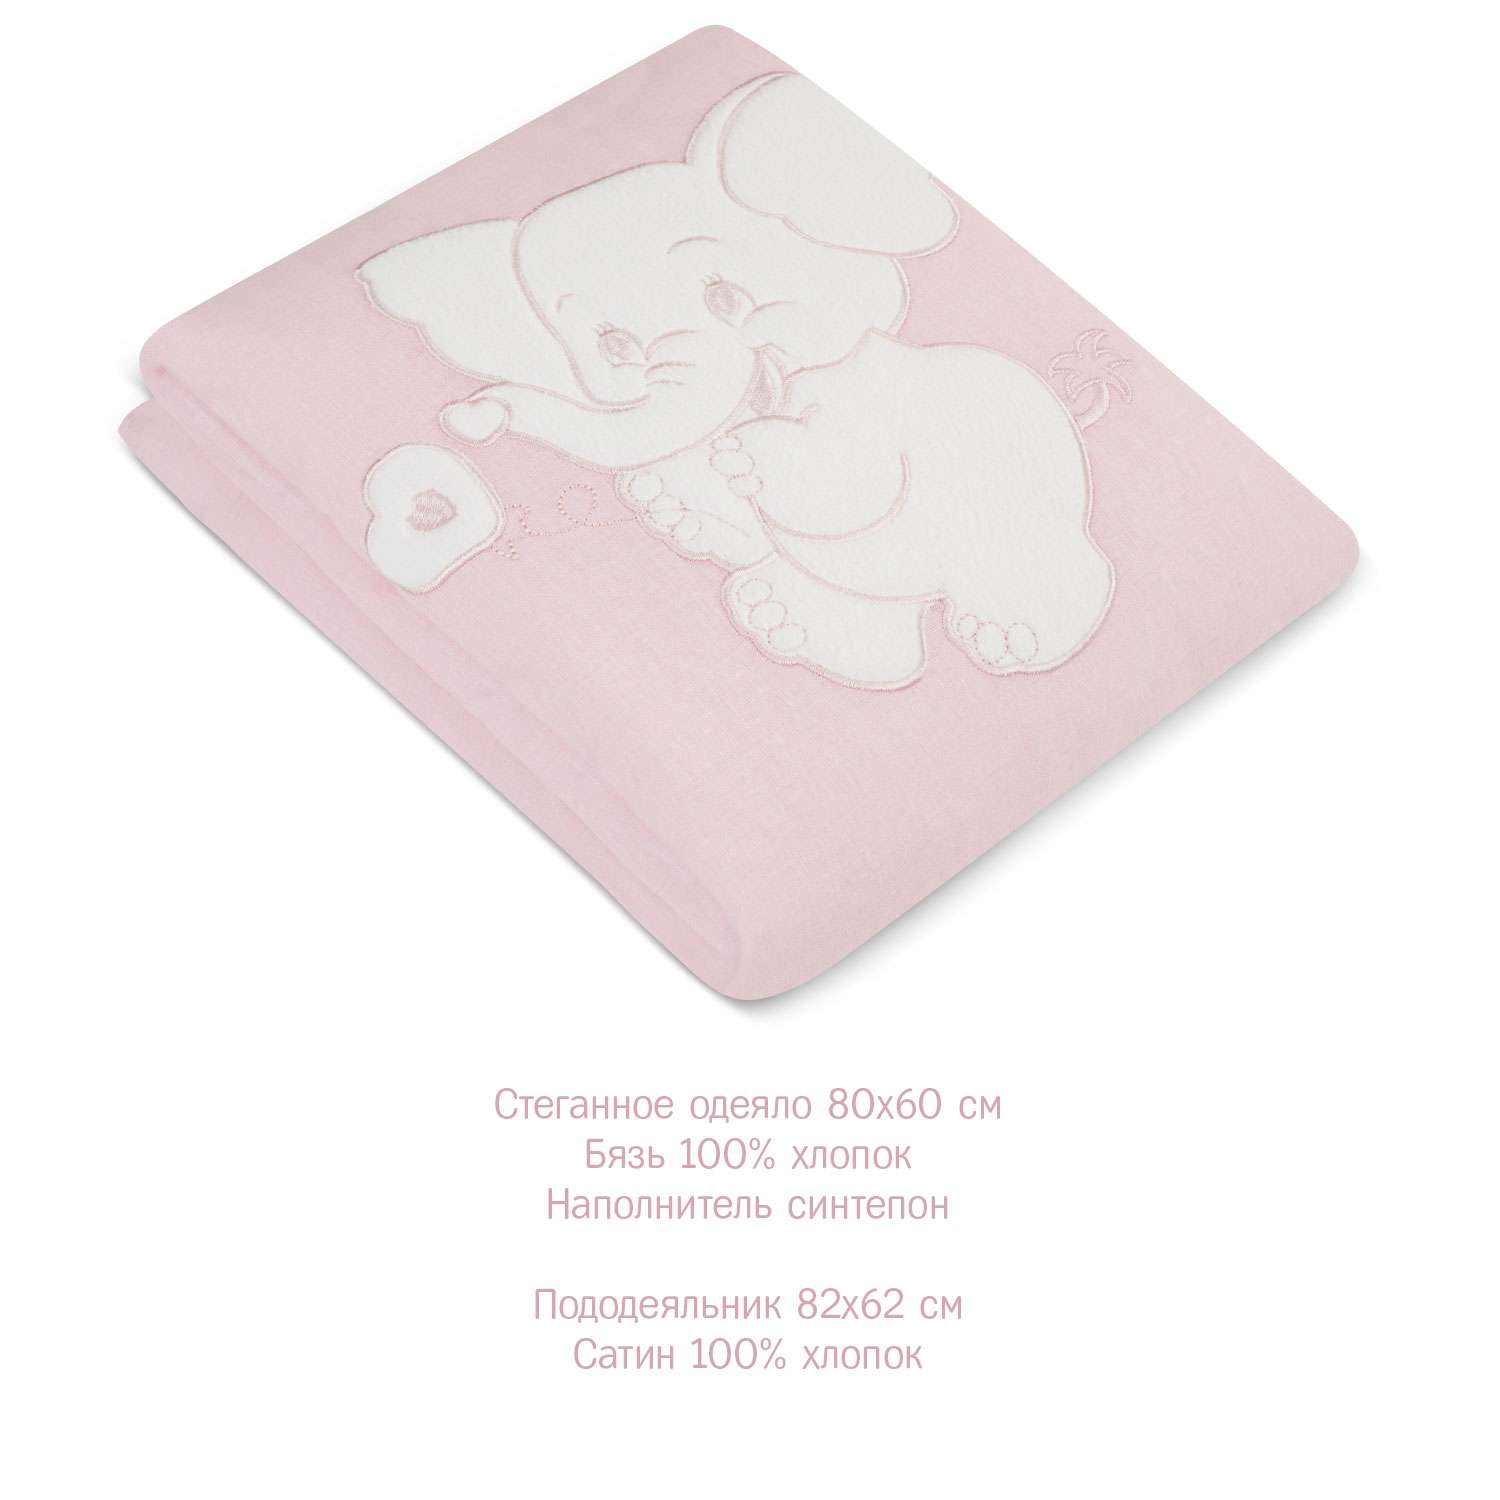 Комплект постельного белья Simplicity Dreams Elephant 5 предметов Розовый - фото 3